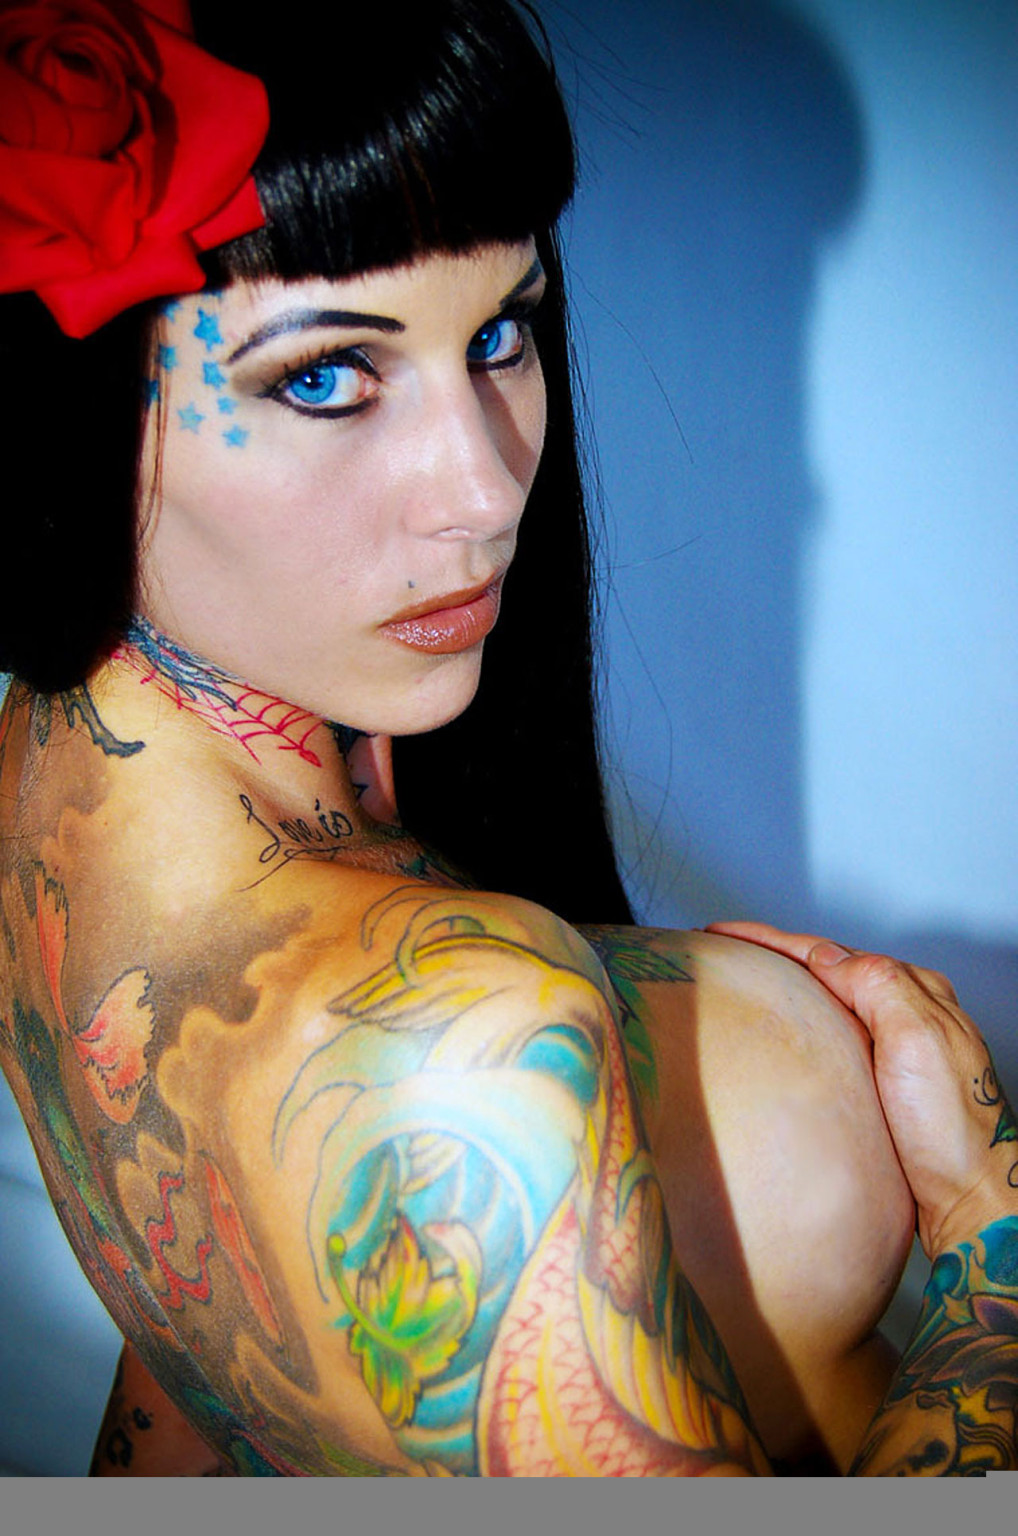 Michelle bombshell zeigt ihren nackten Körper und ihre Tattoos
 #75355722